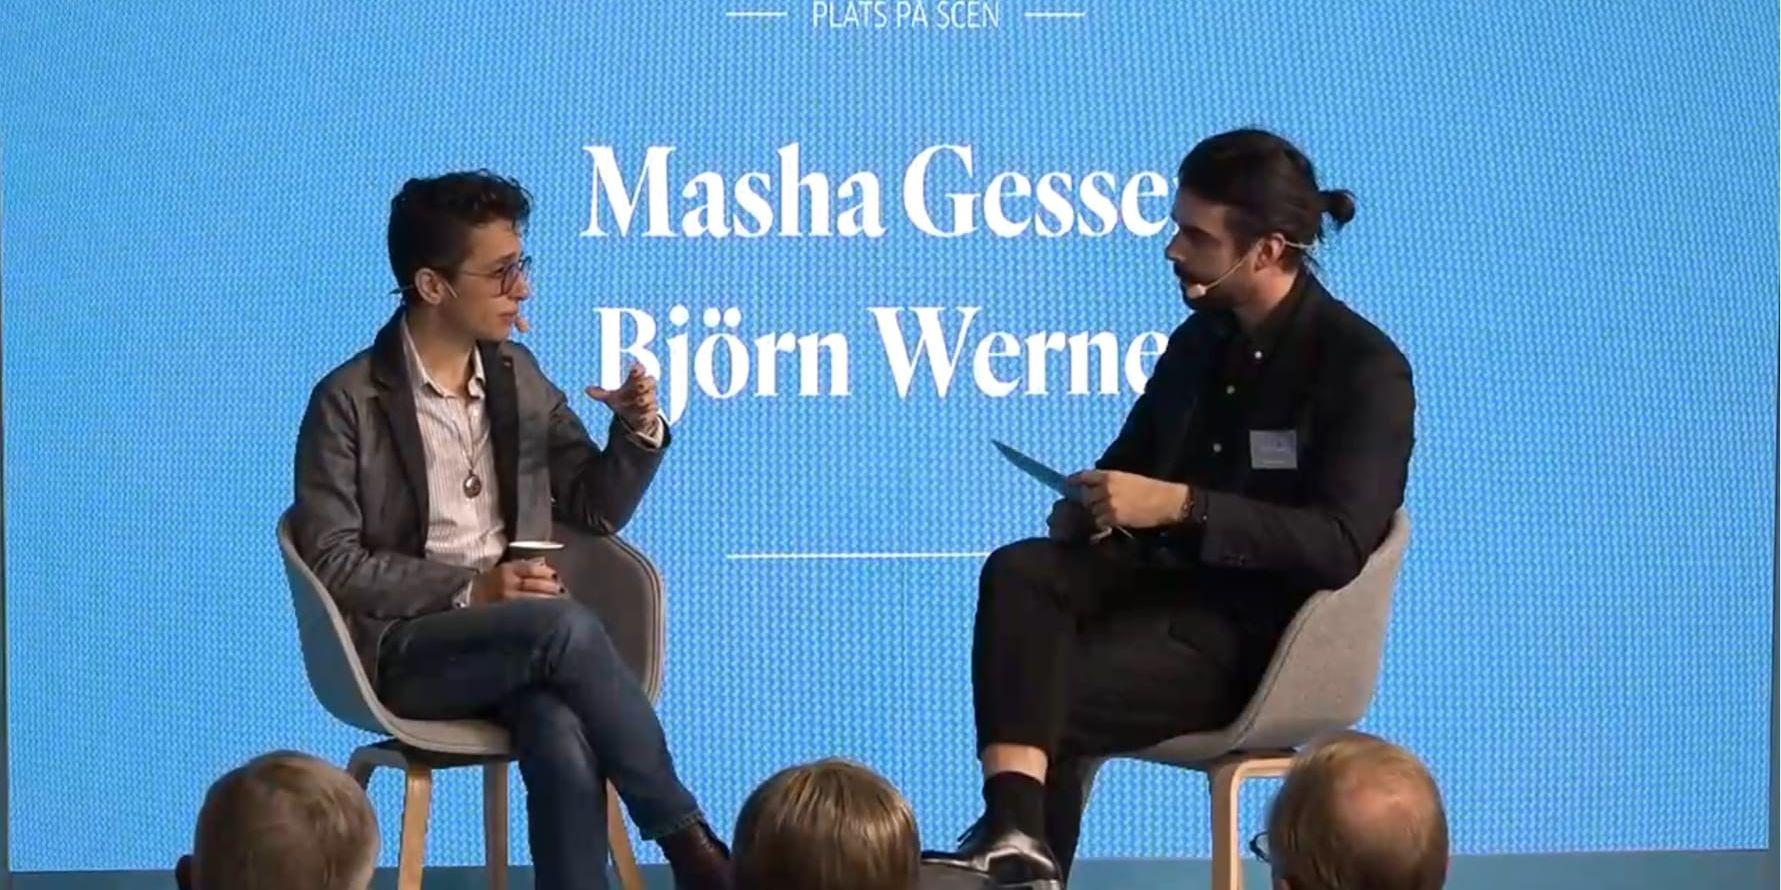 Journalisten och författaren Masha Gessen i samtal med GP:s kulturchef Björn Werner.